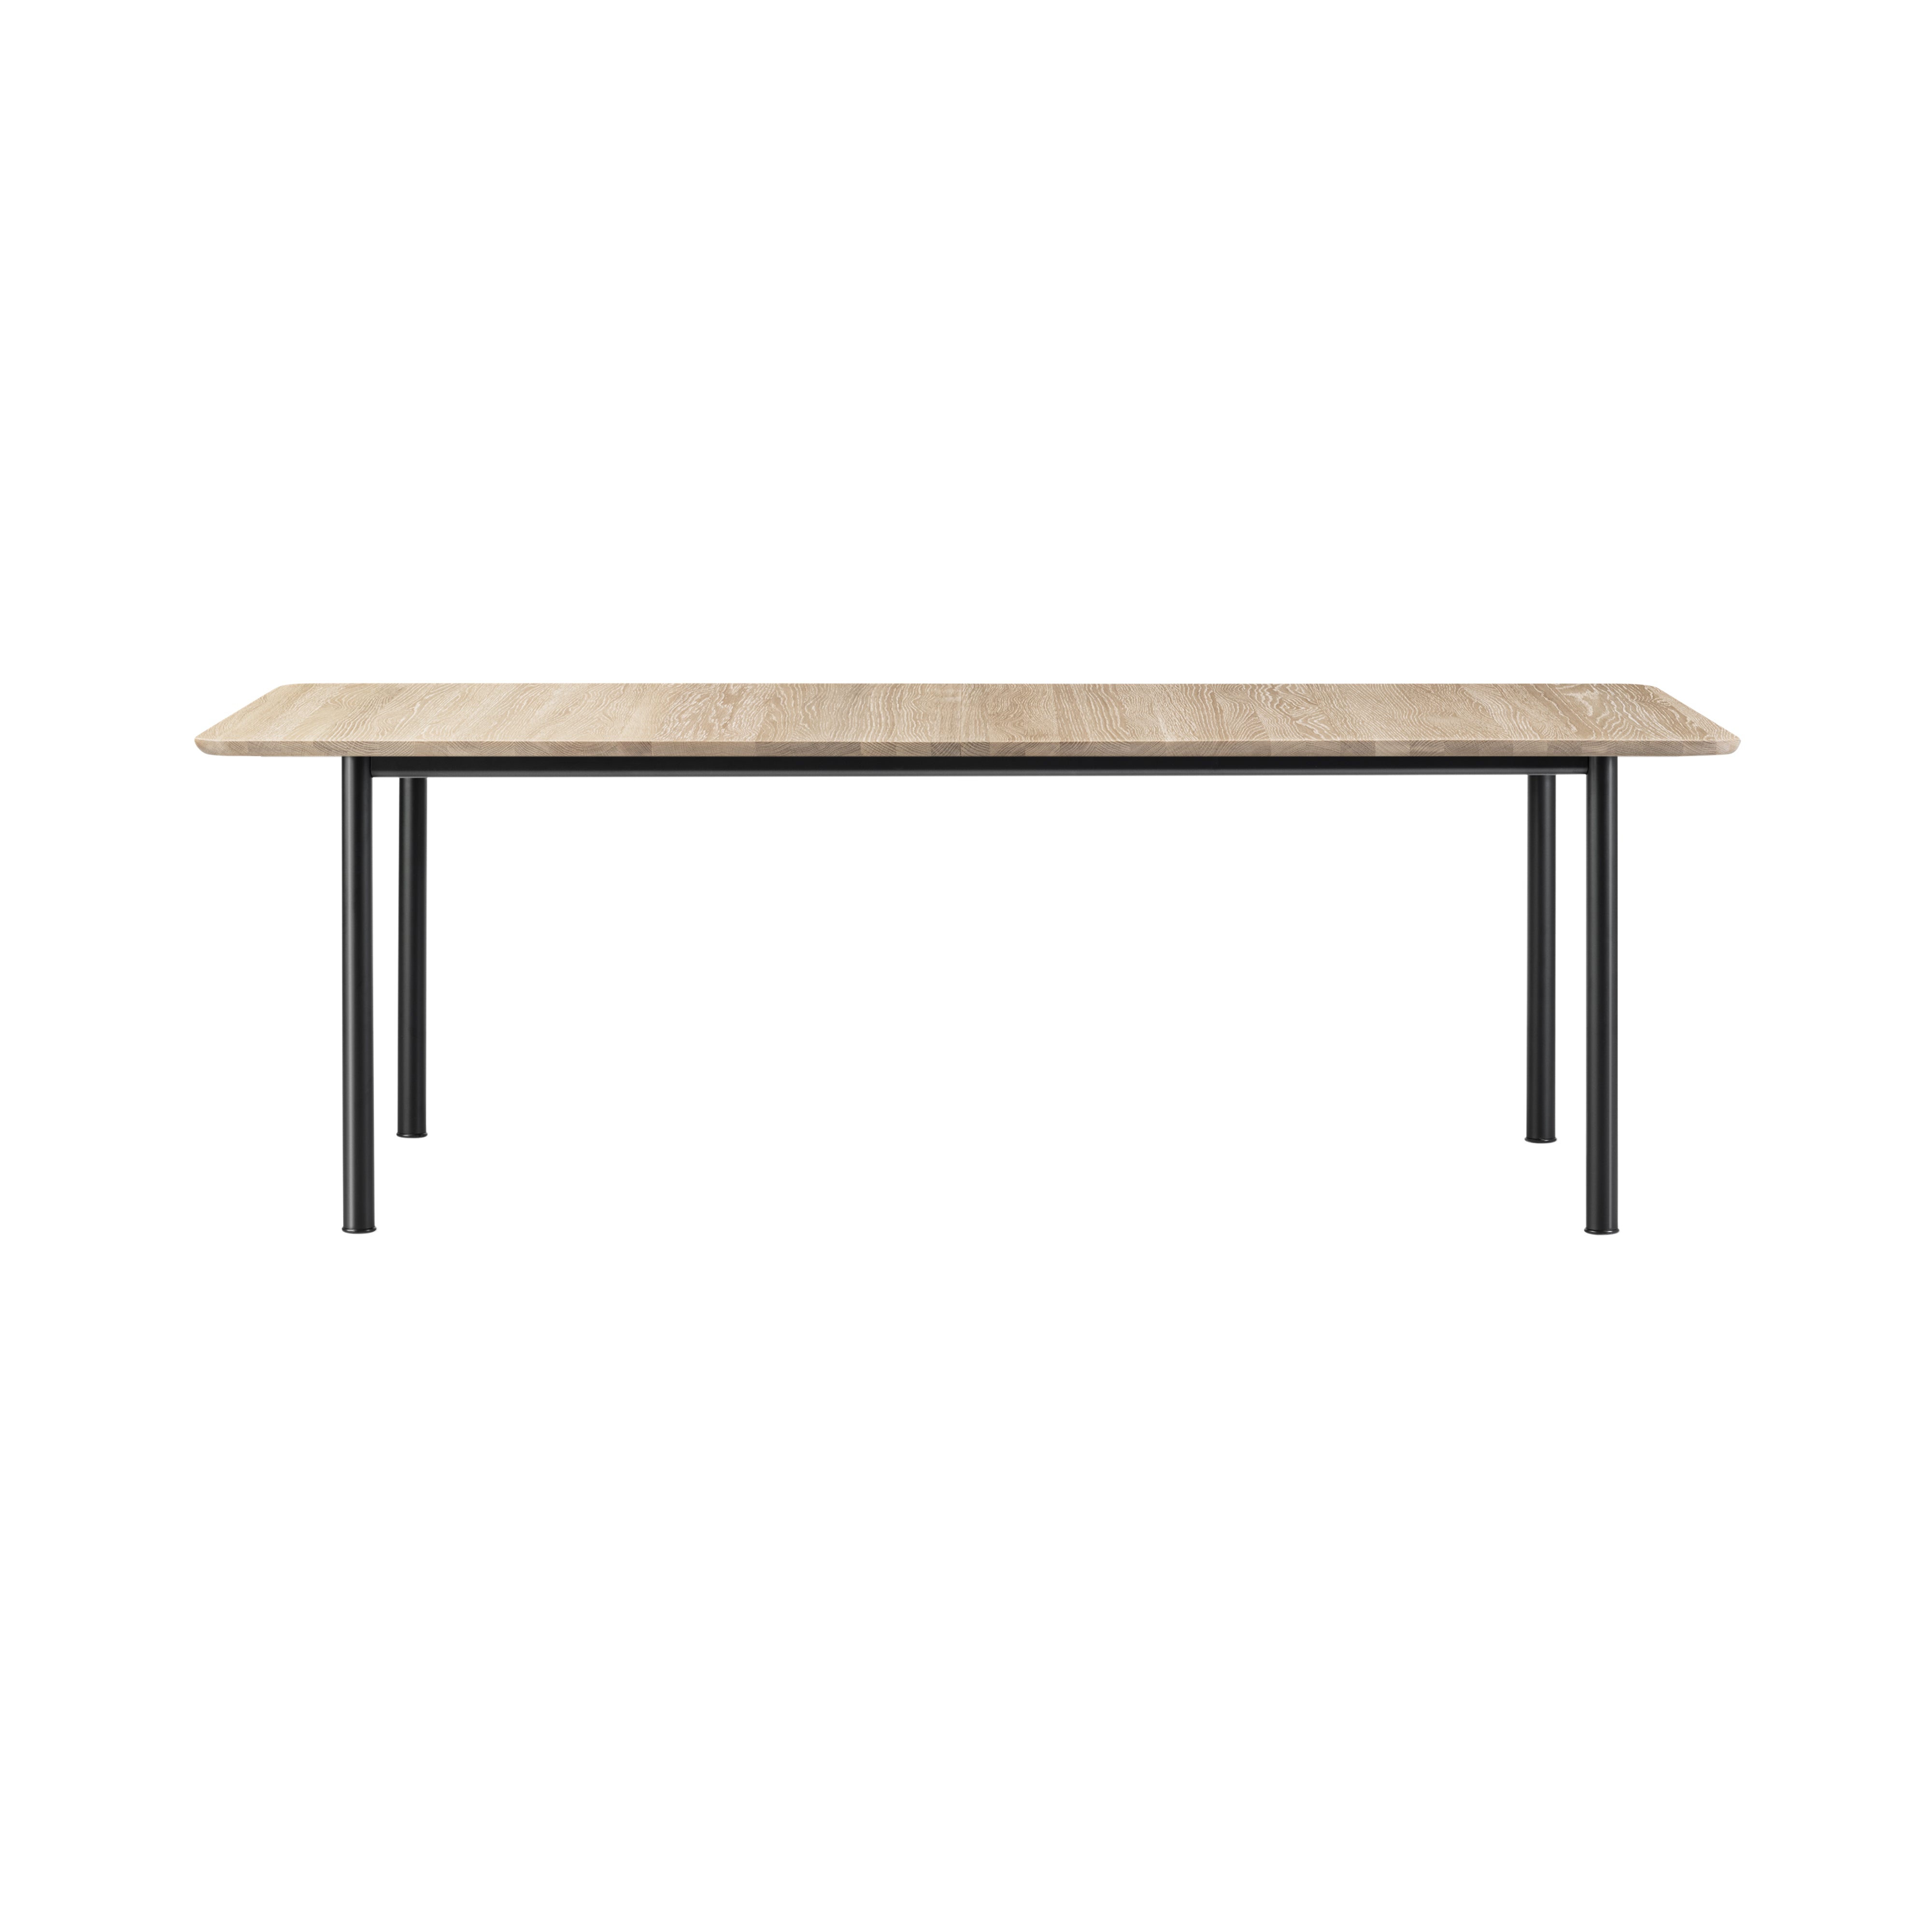 Plan Extendable Table: Light Oiled Oak + Black